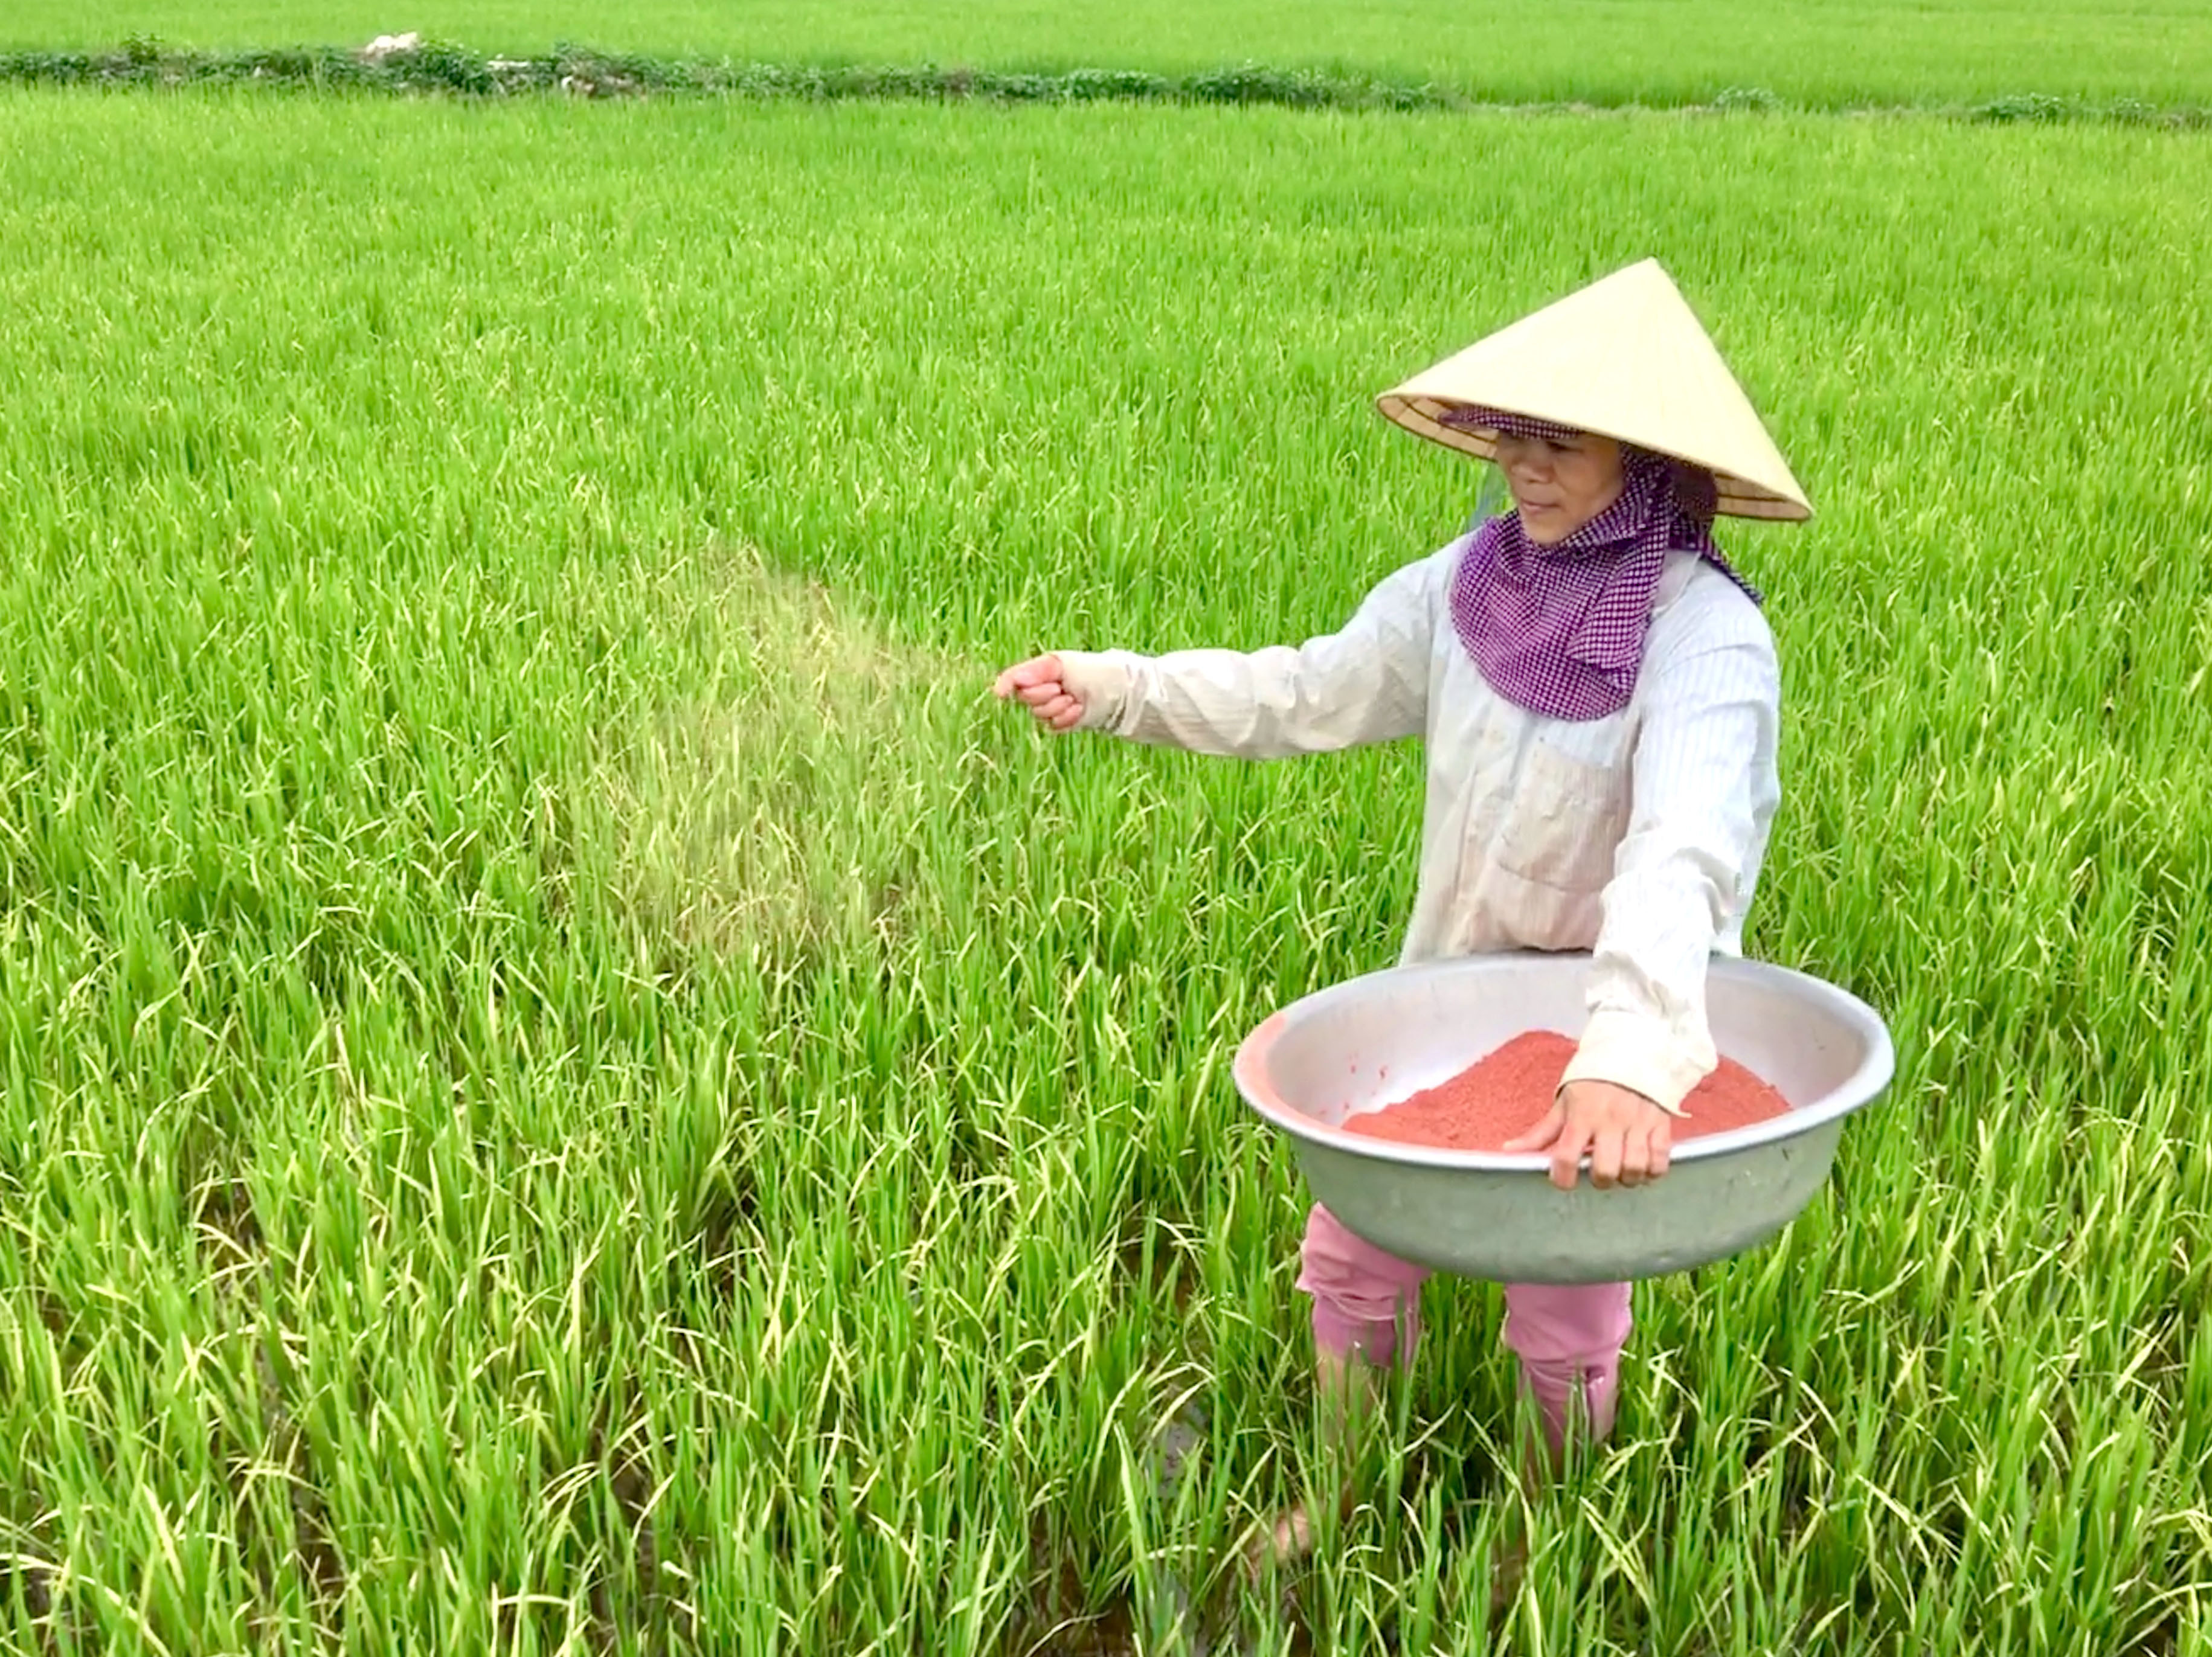 Chị Nguyễn Thị Ngọc ở xóm 1 xã Hòa Sơn (Đô Lương) cũng được hưởng lợi nguồn nước từ Nhà máy Xi măng Đô Lương đang bón thúc phân cho cây lúa làm đòng. Ảnh Ngọc Phương